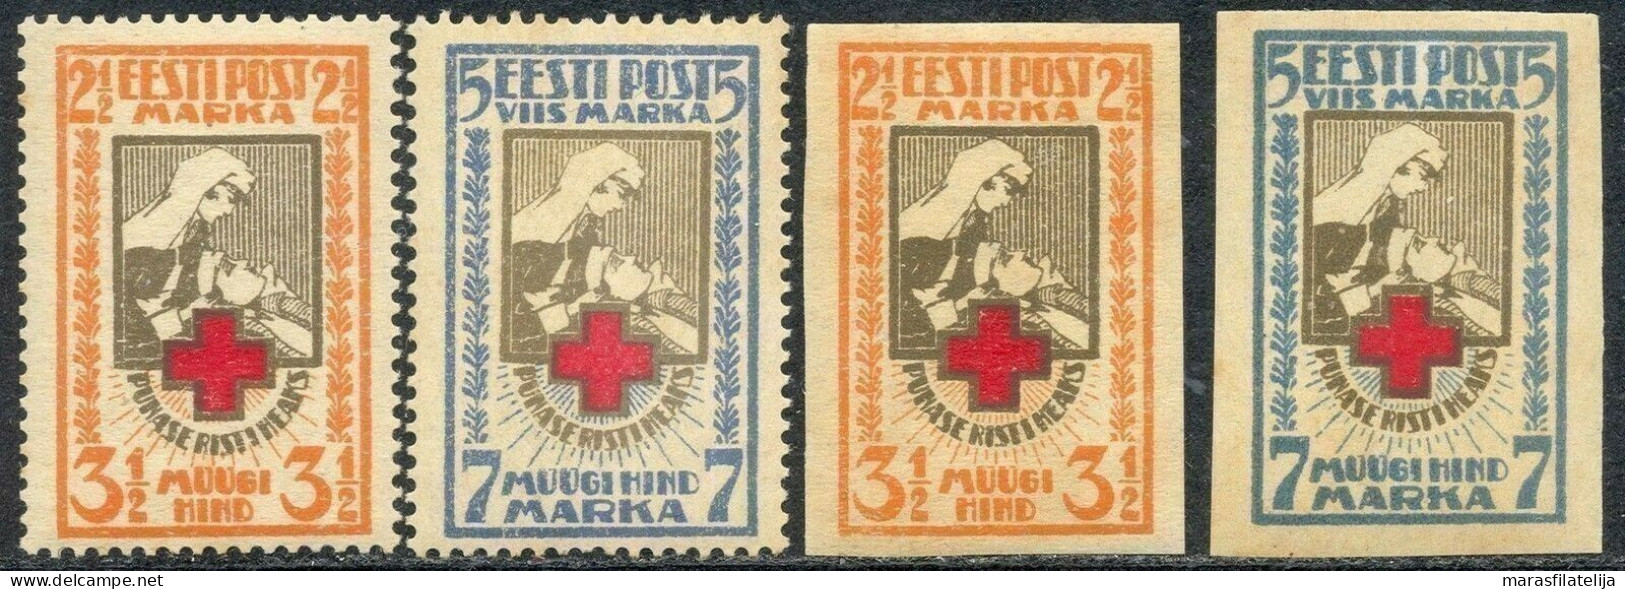 Estonia, 1921, Red Cross, Imperforated & Perforated Set - Estland